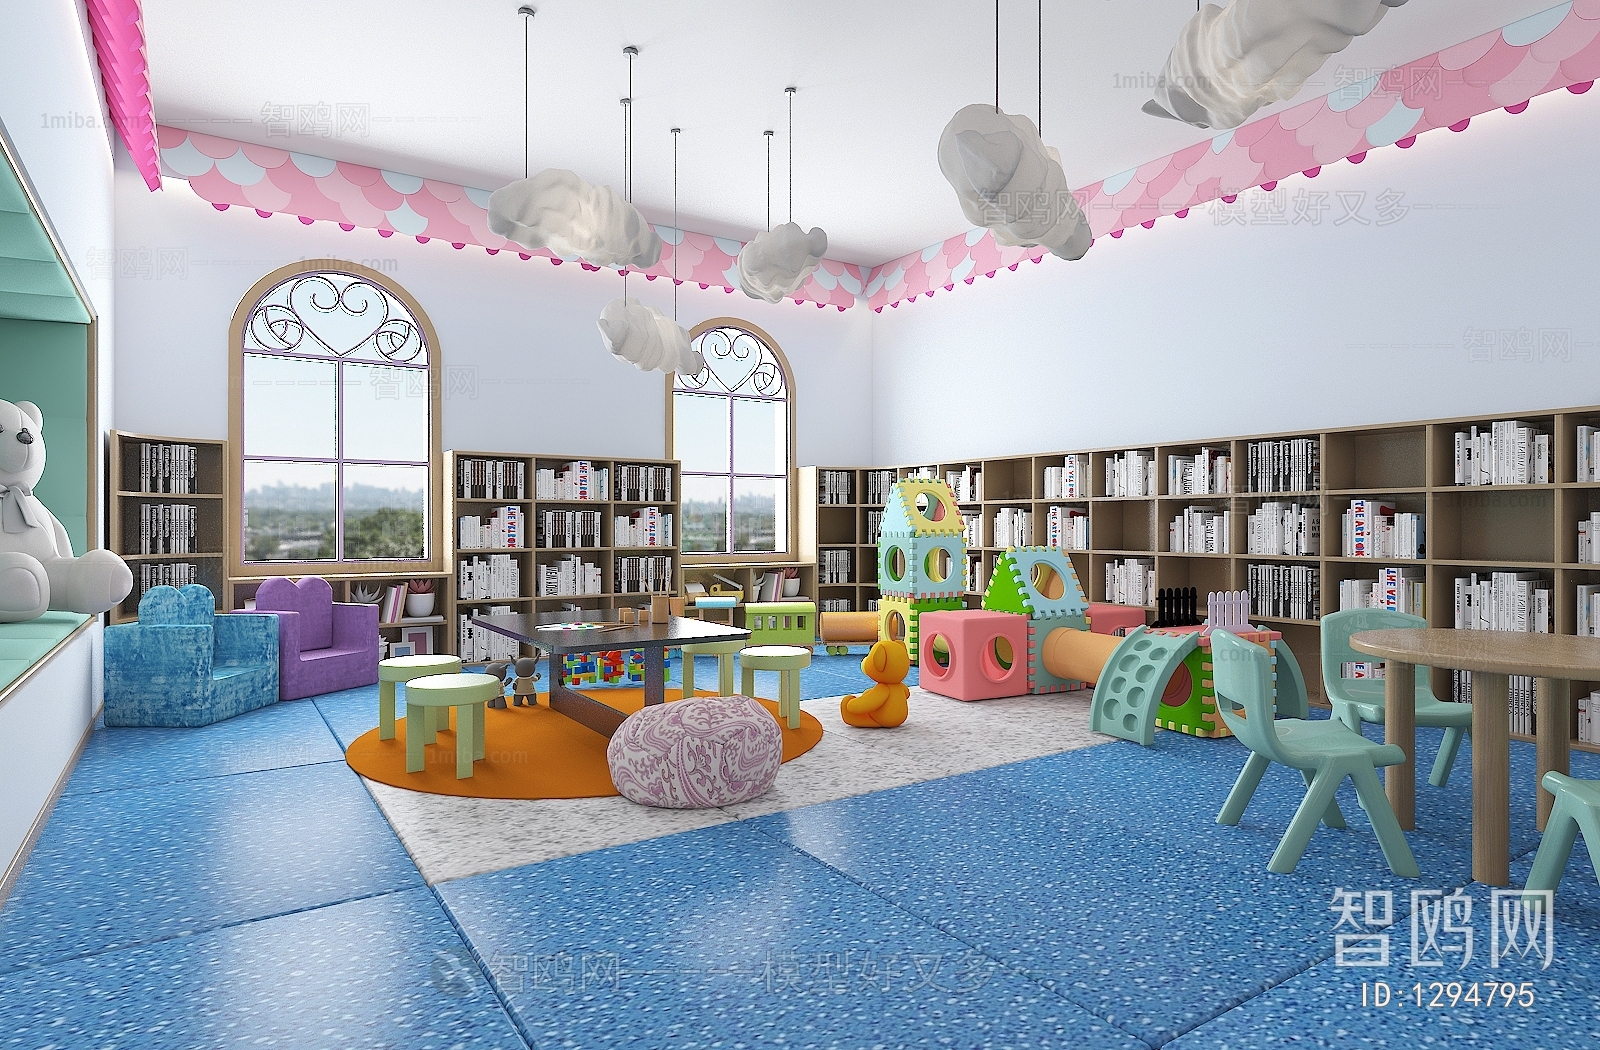 Modern Children's Reading Room